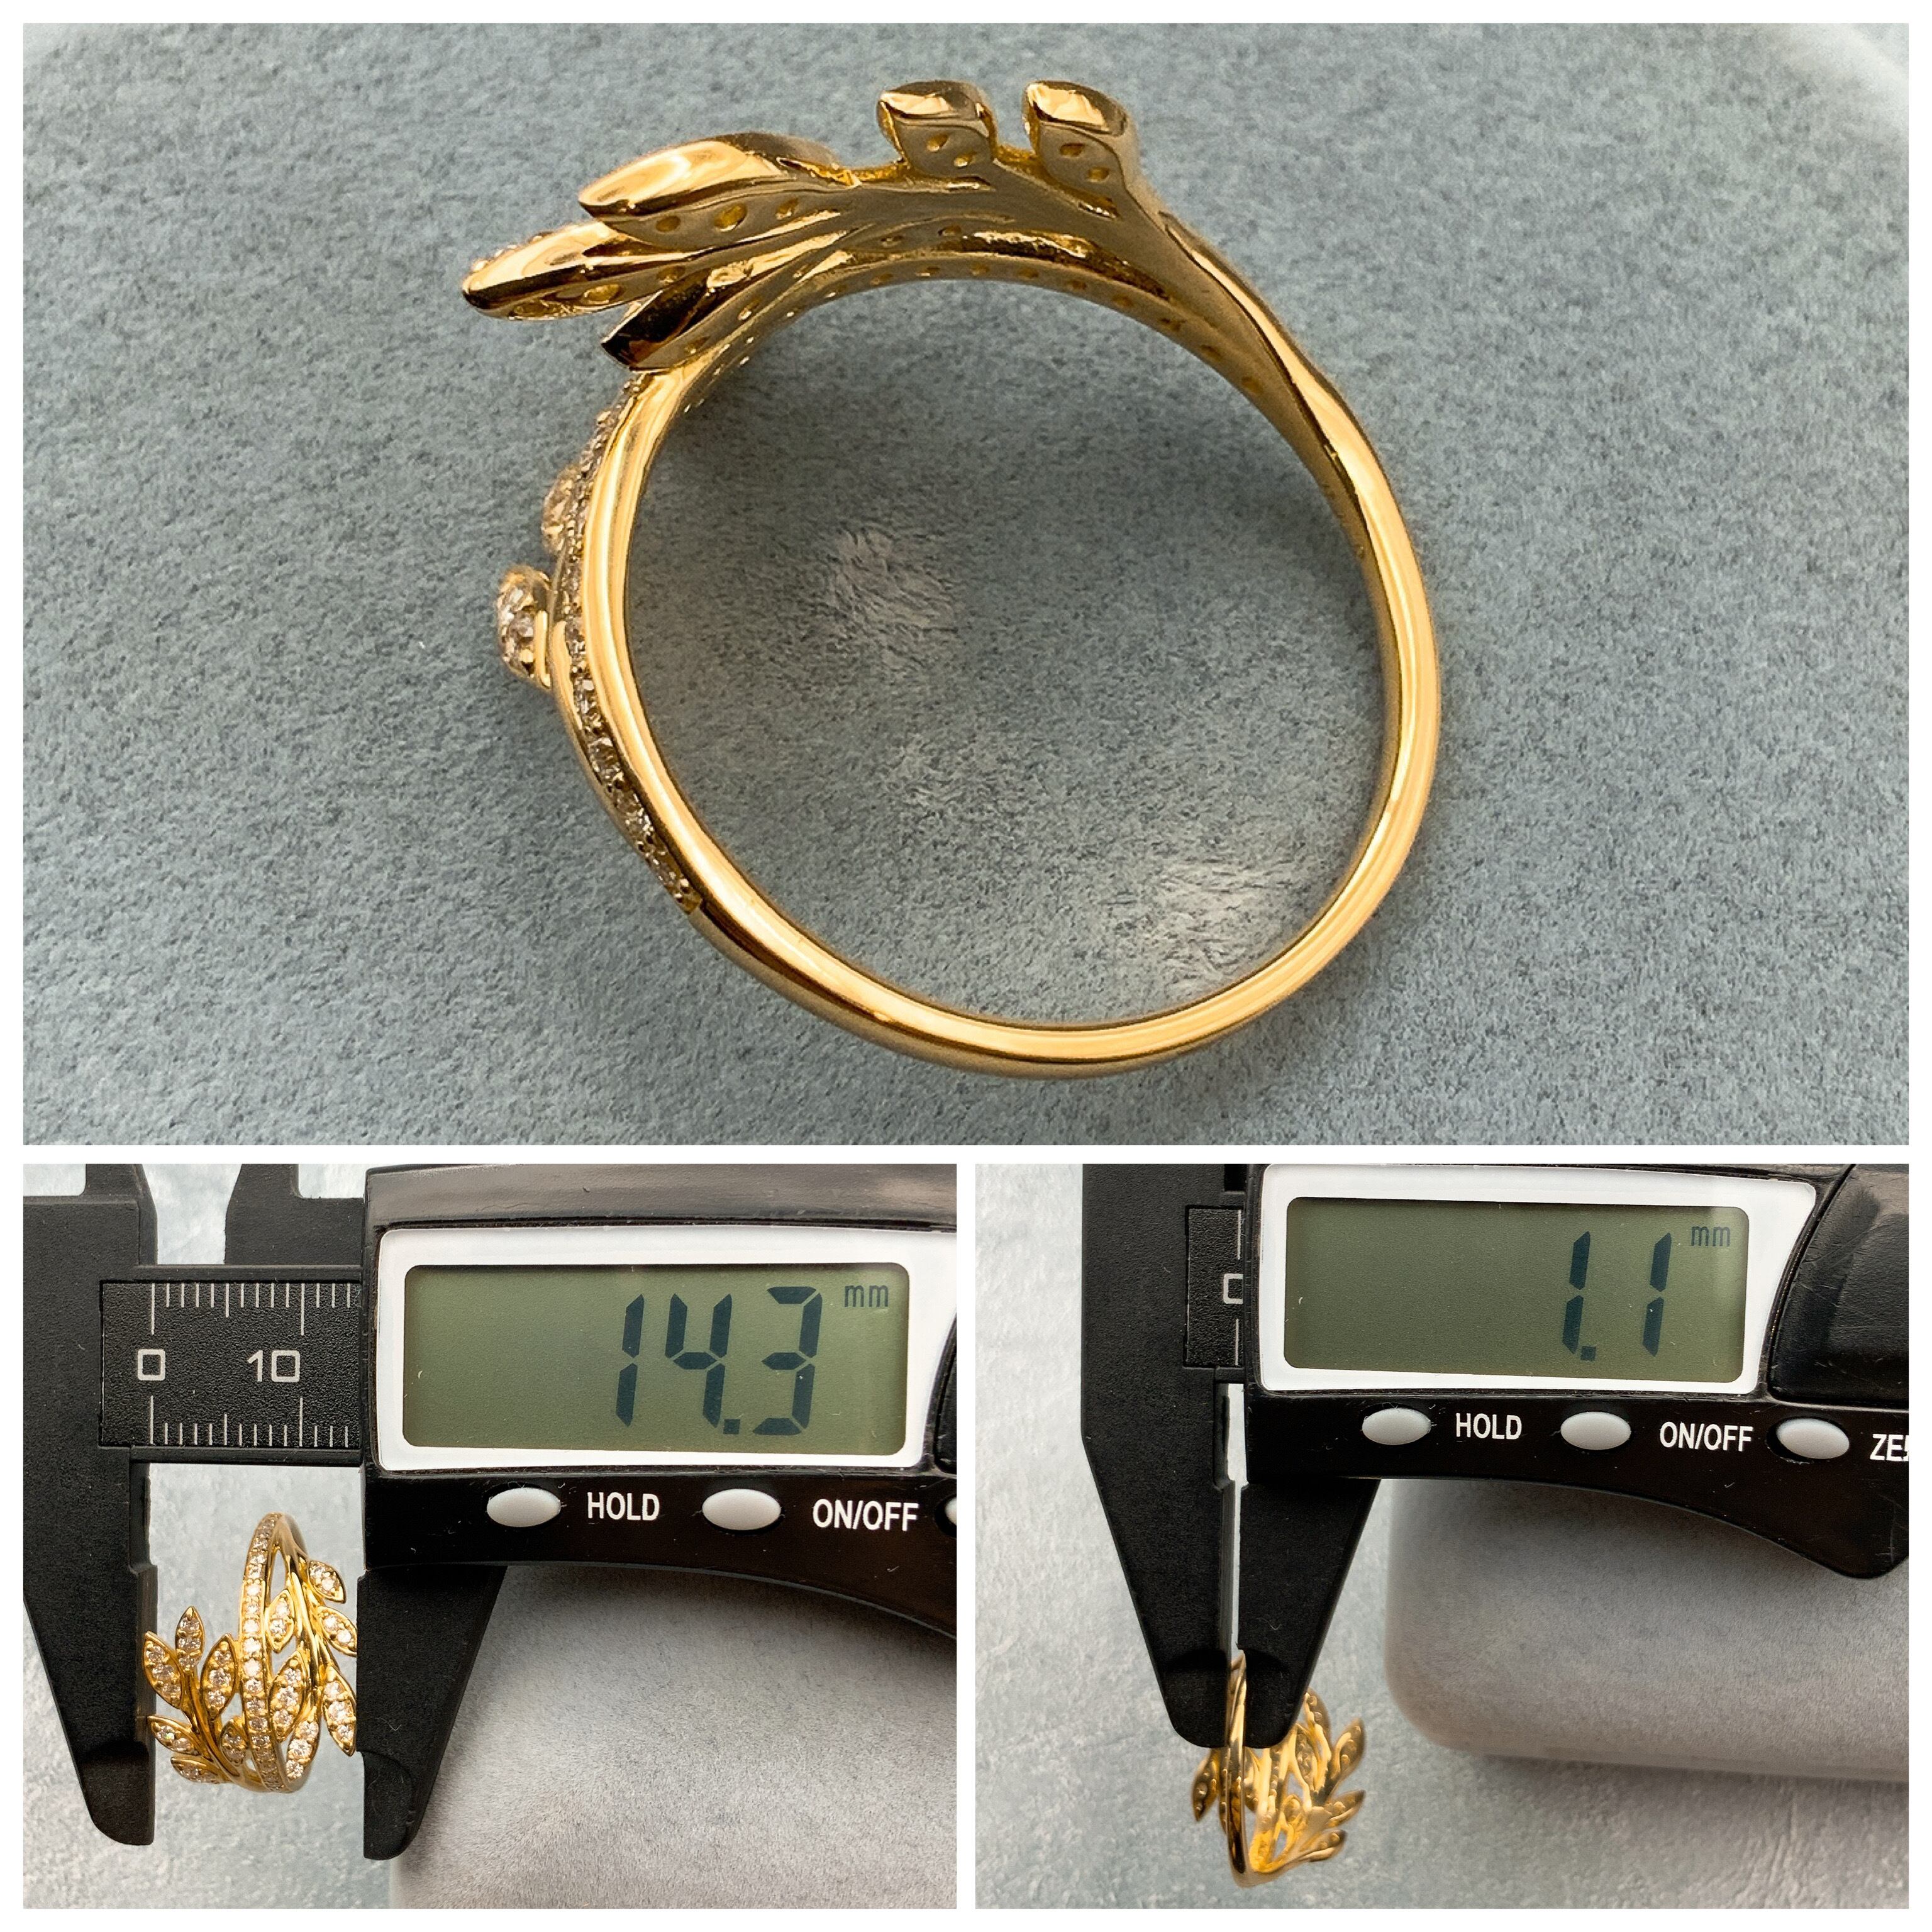 K18 18金 ダイヤモンド リーフ リング / K18 Diamond leaf ring 品番kr-9673